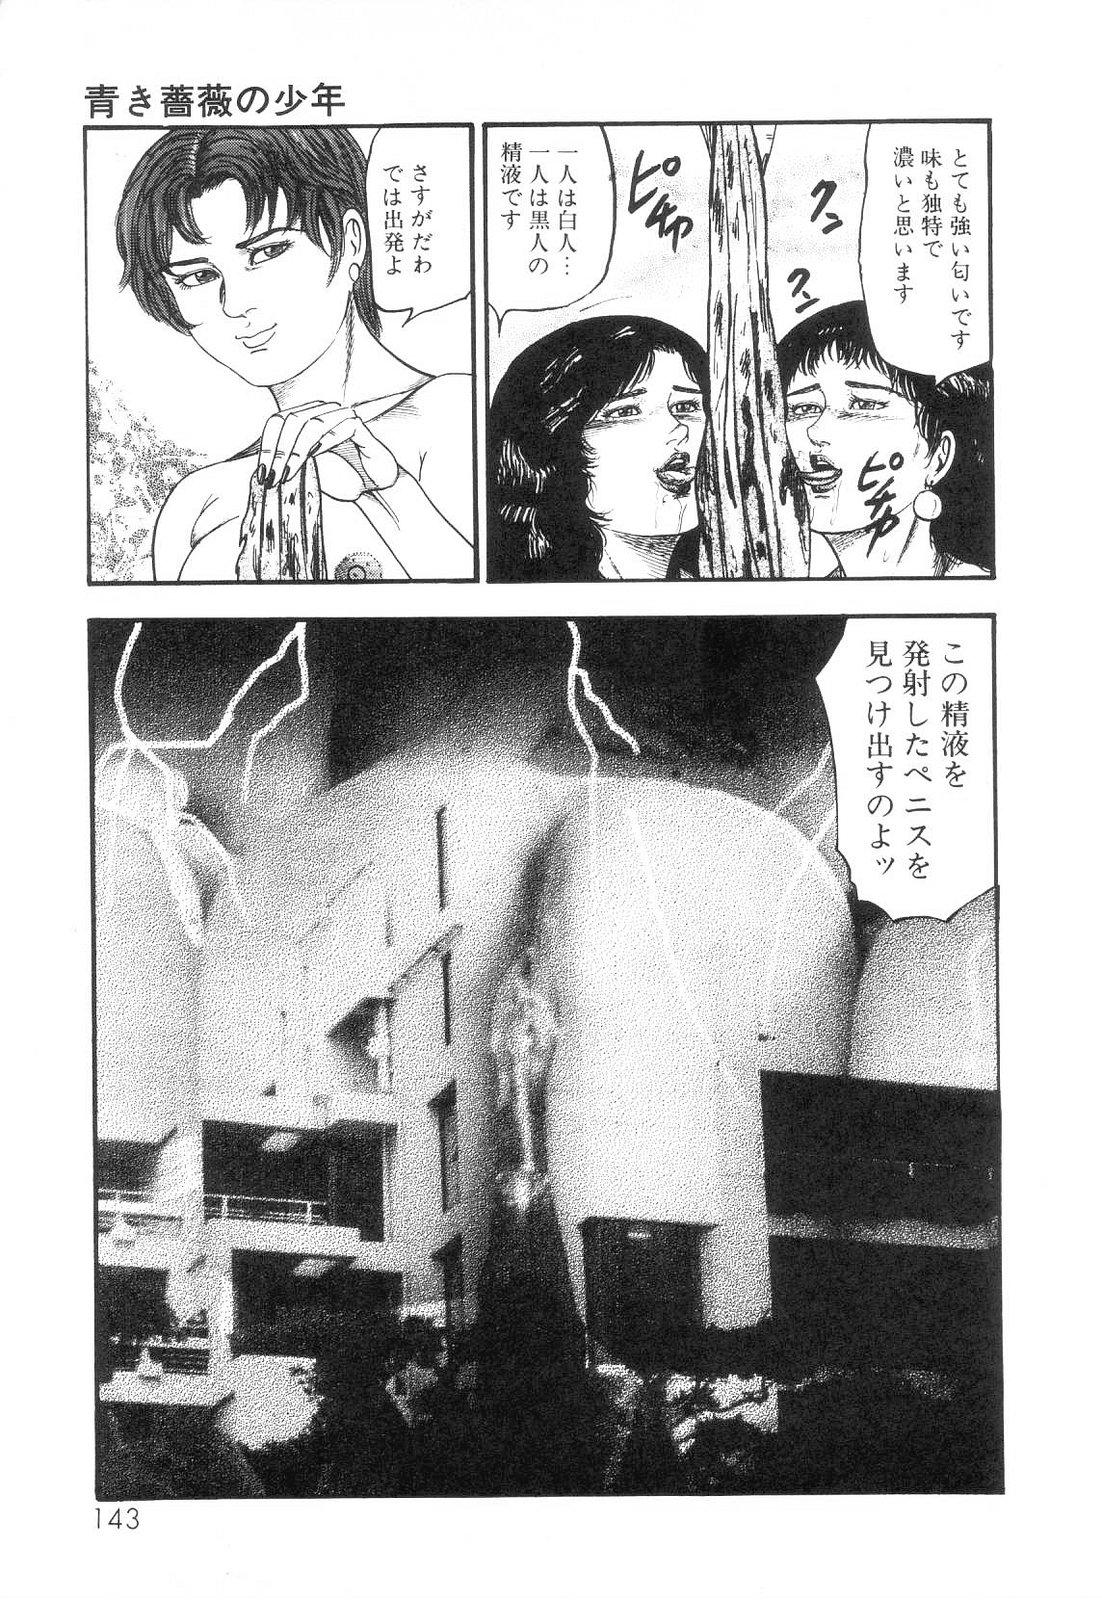 Shiro no Mokushiroku Vol. 6 - Juuai Erika no Shou 144